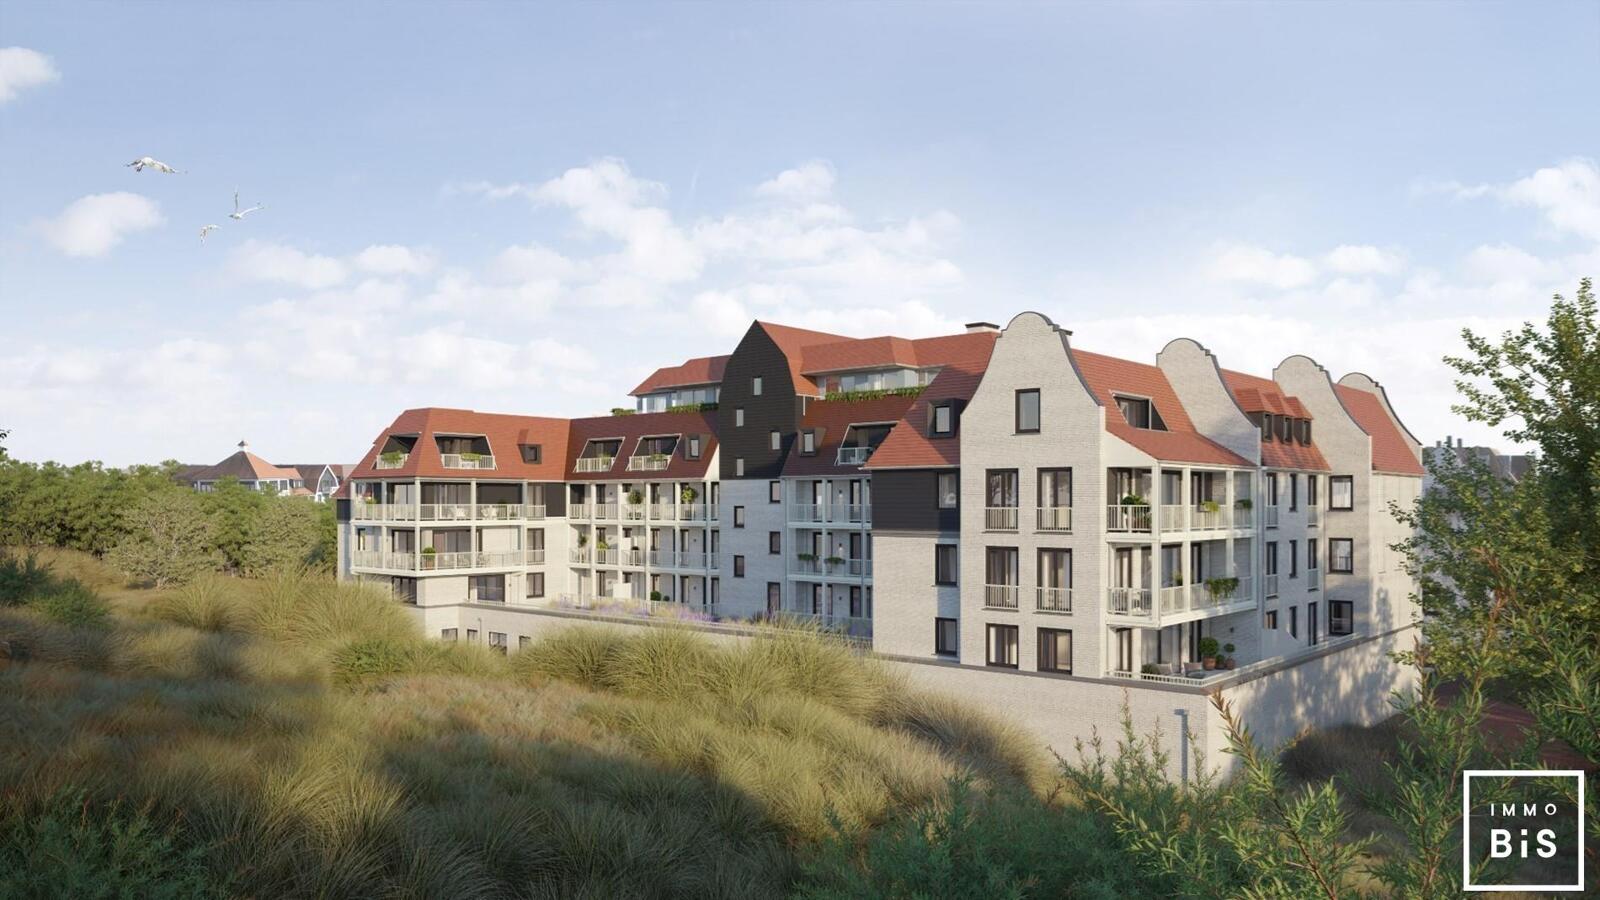 " Appartement villa moderne avec terrasse sur la Digue à Cadzand - Résidence Duinhof-Noord " 4